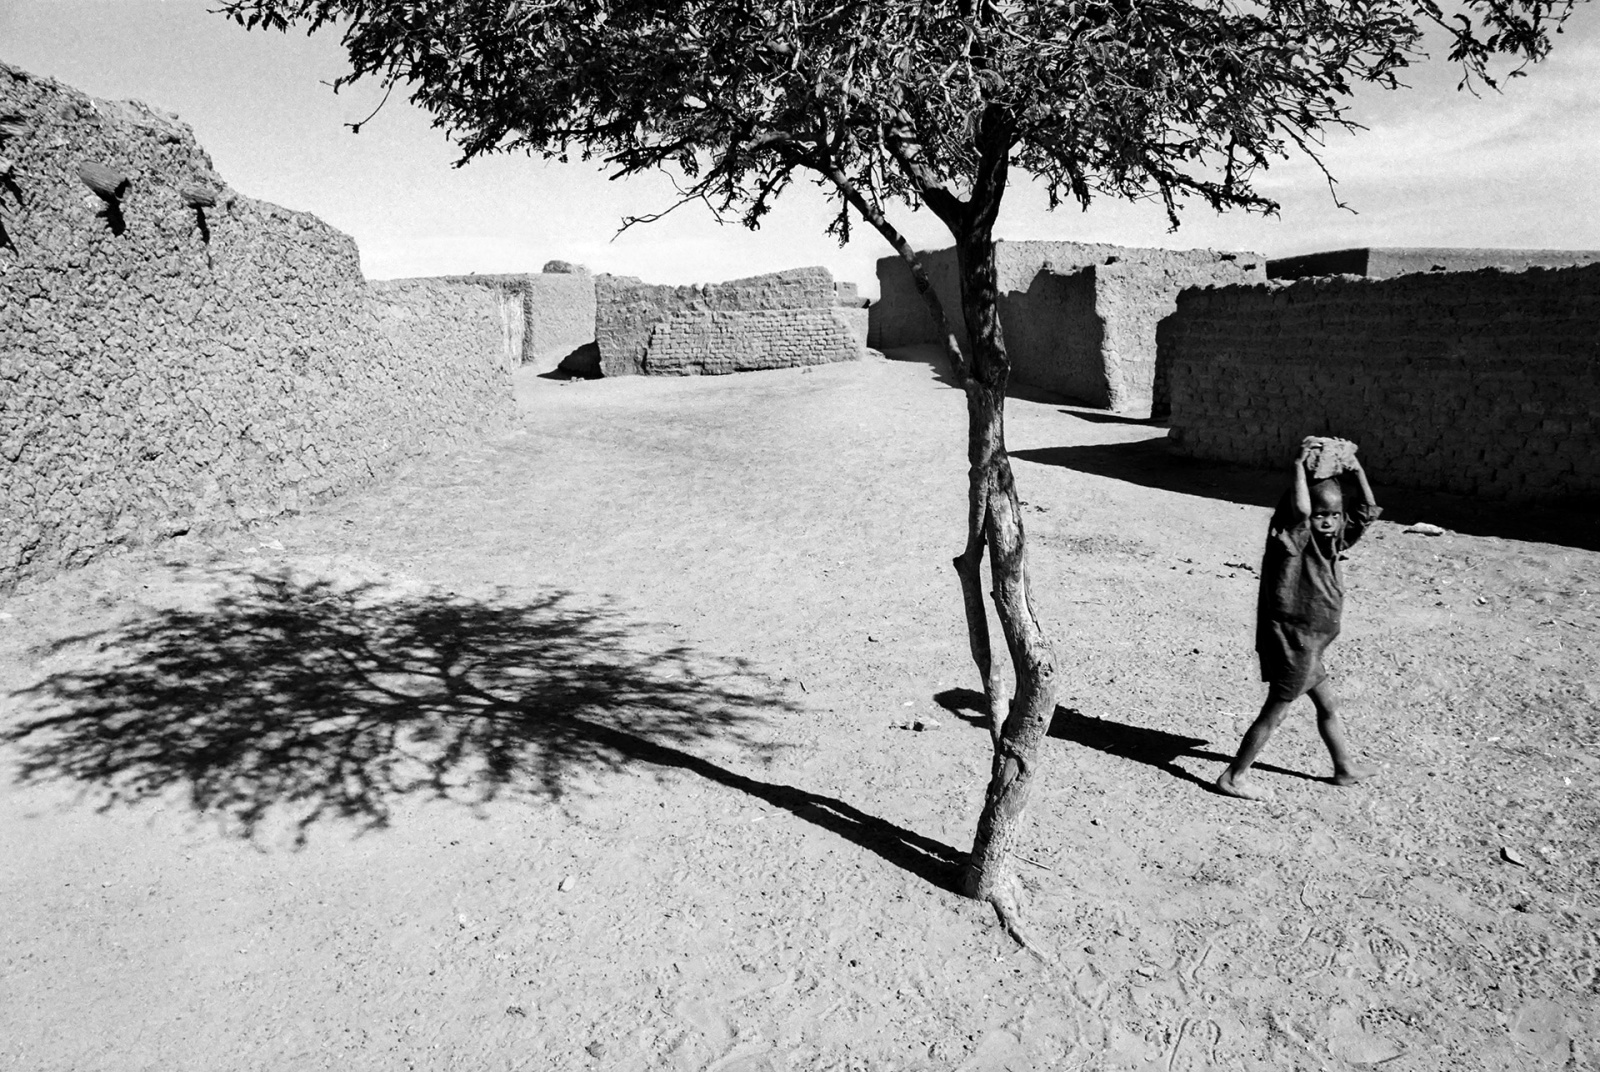 Timbuctu, Mali 2002 - analogic photo
